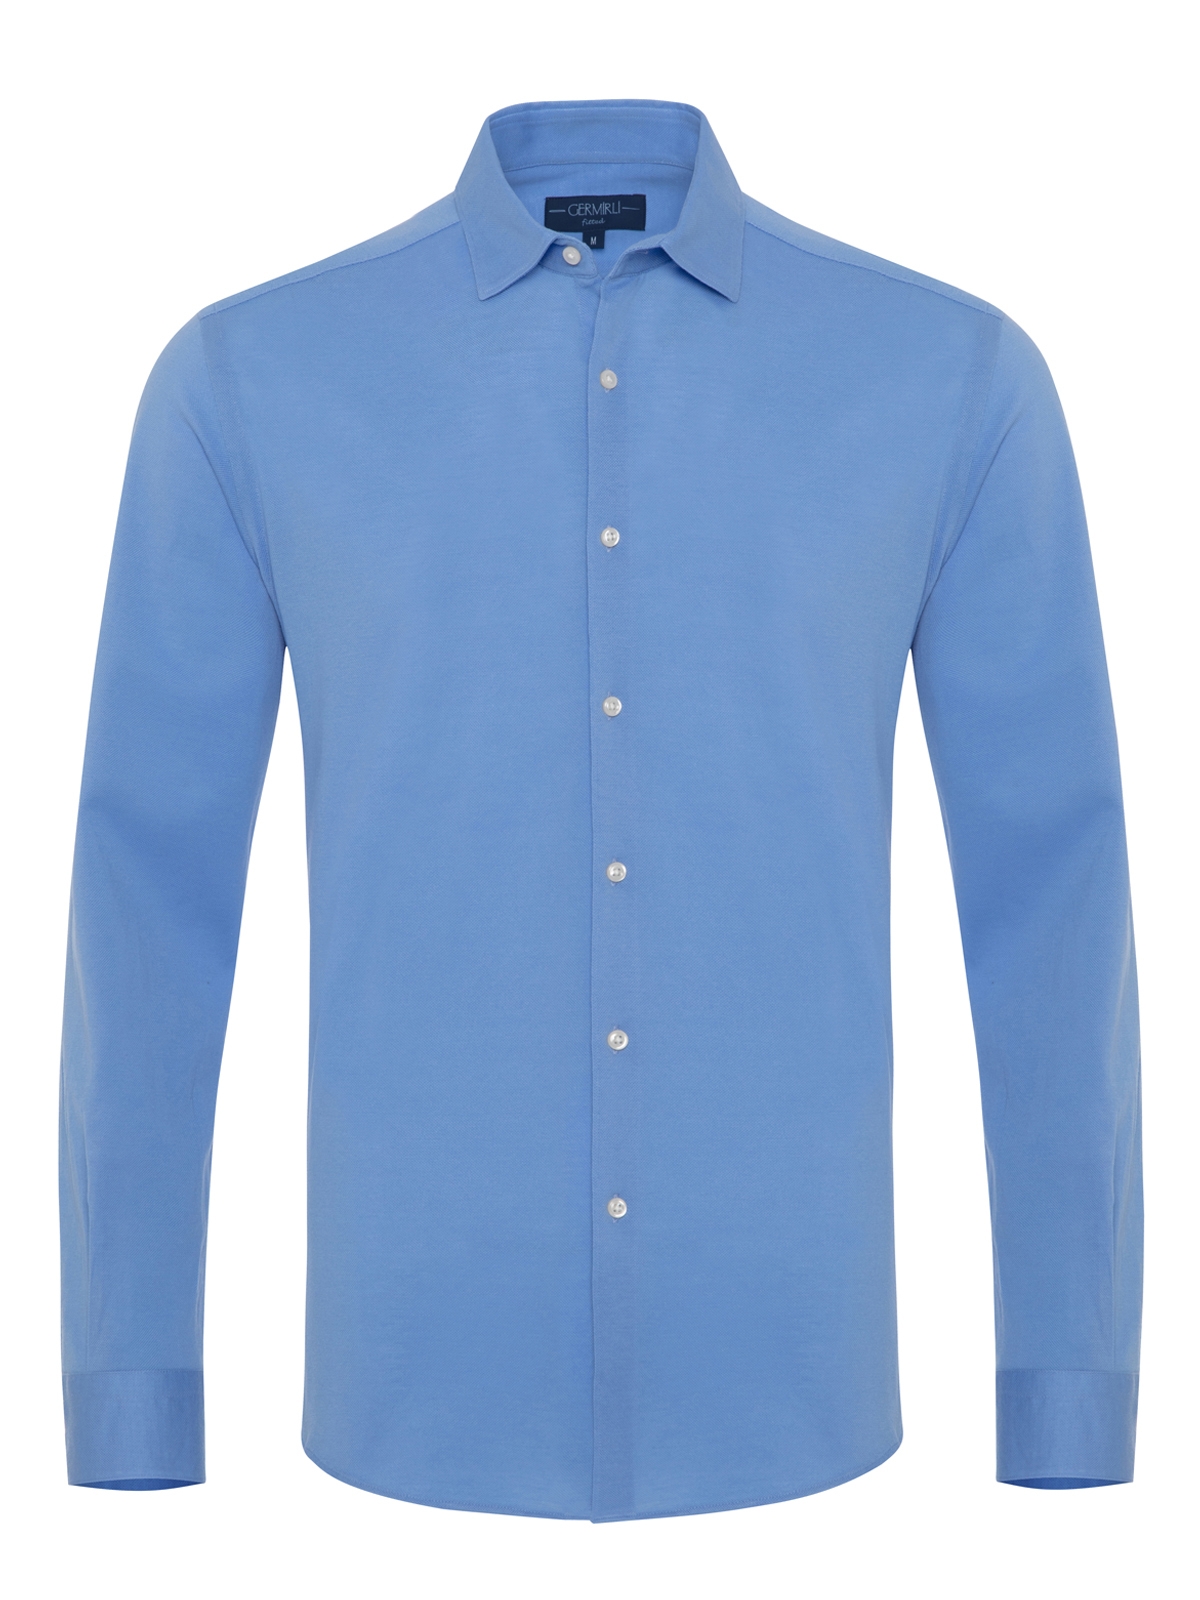 Germirli - Germirli Mavi Soft Yaka Örme Tailor Fit Gömlek